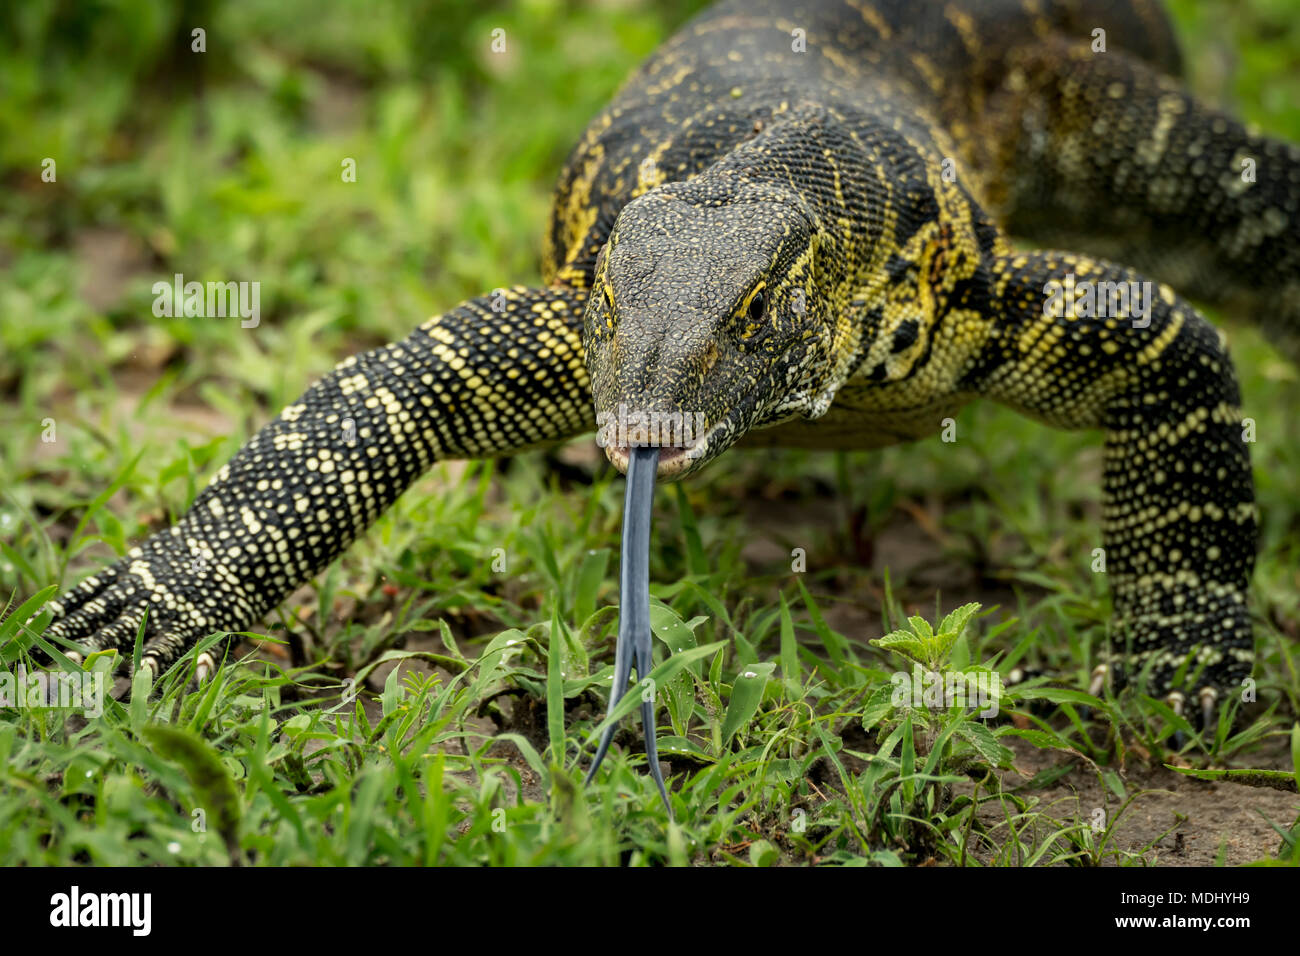 Close-up of monitor lizard (Varanus varius) with tongue out, Tarangire National Park; Tanzania Stock Photo